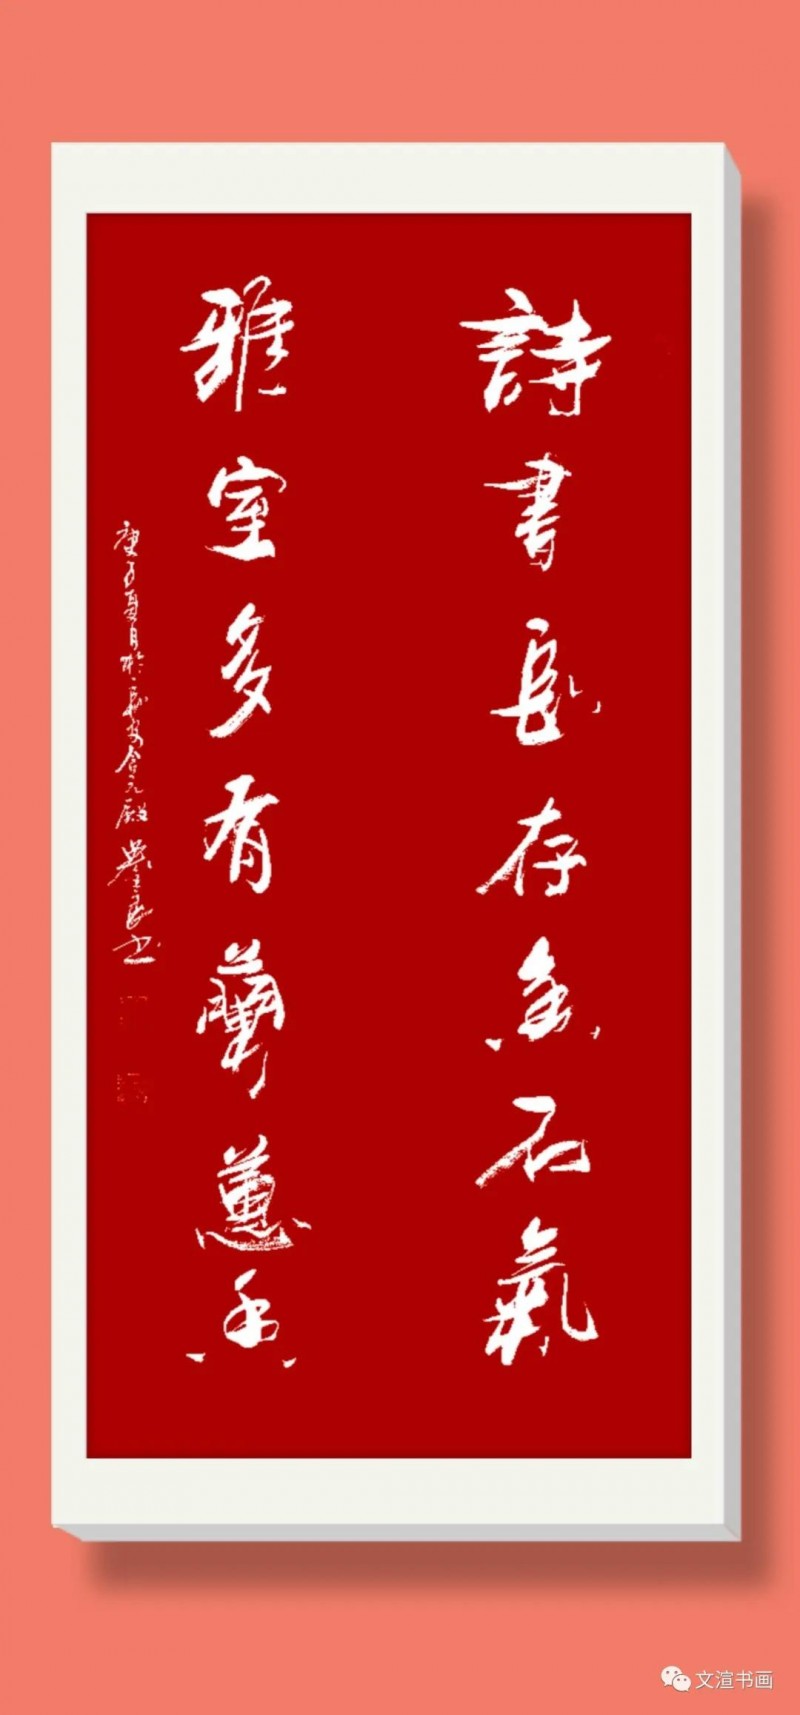 中国楹联学会中宣盛世文化艺术交流中心书画风采展示——吴全良